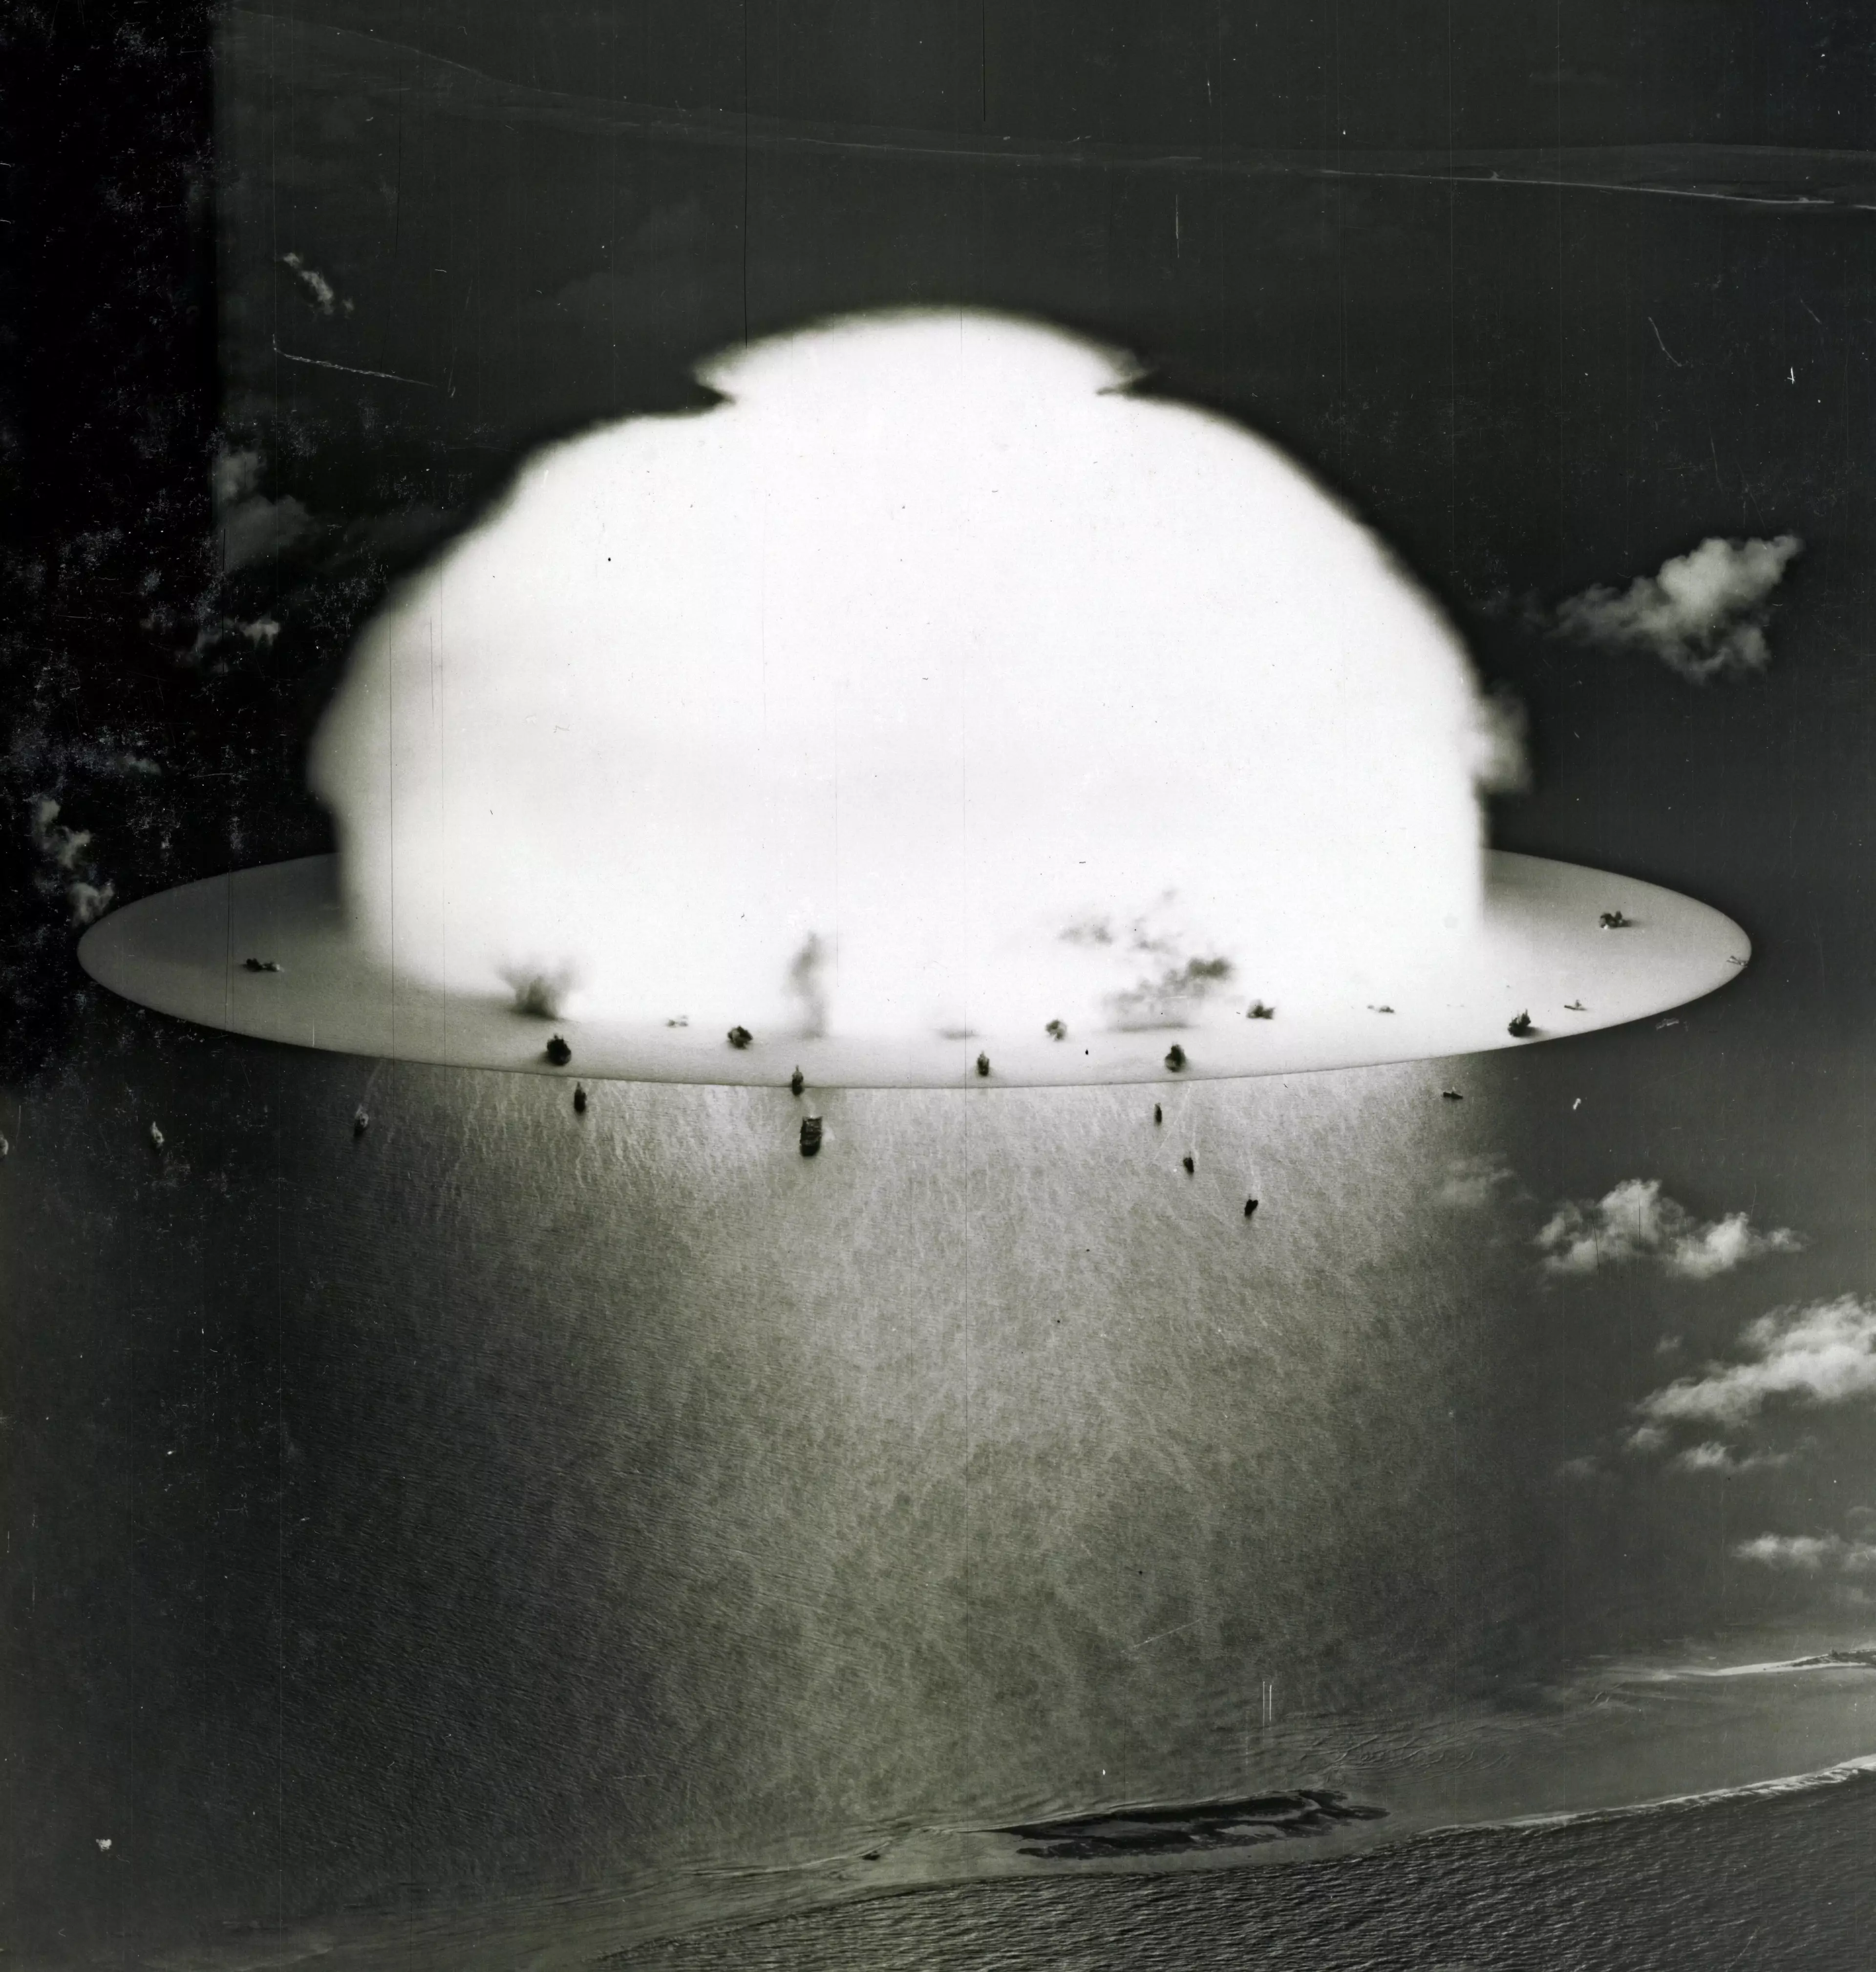 A nuclear test at Bikini Atoll in 1946.